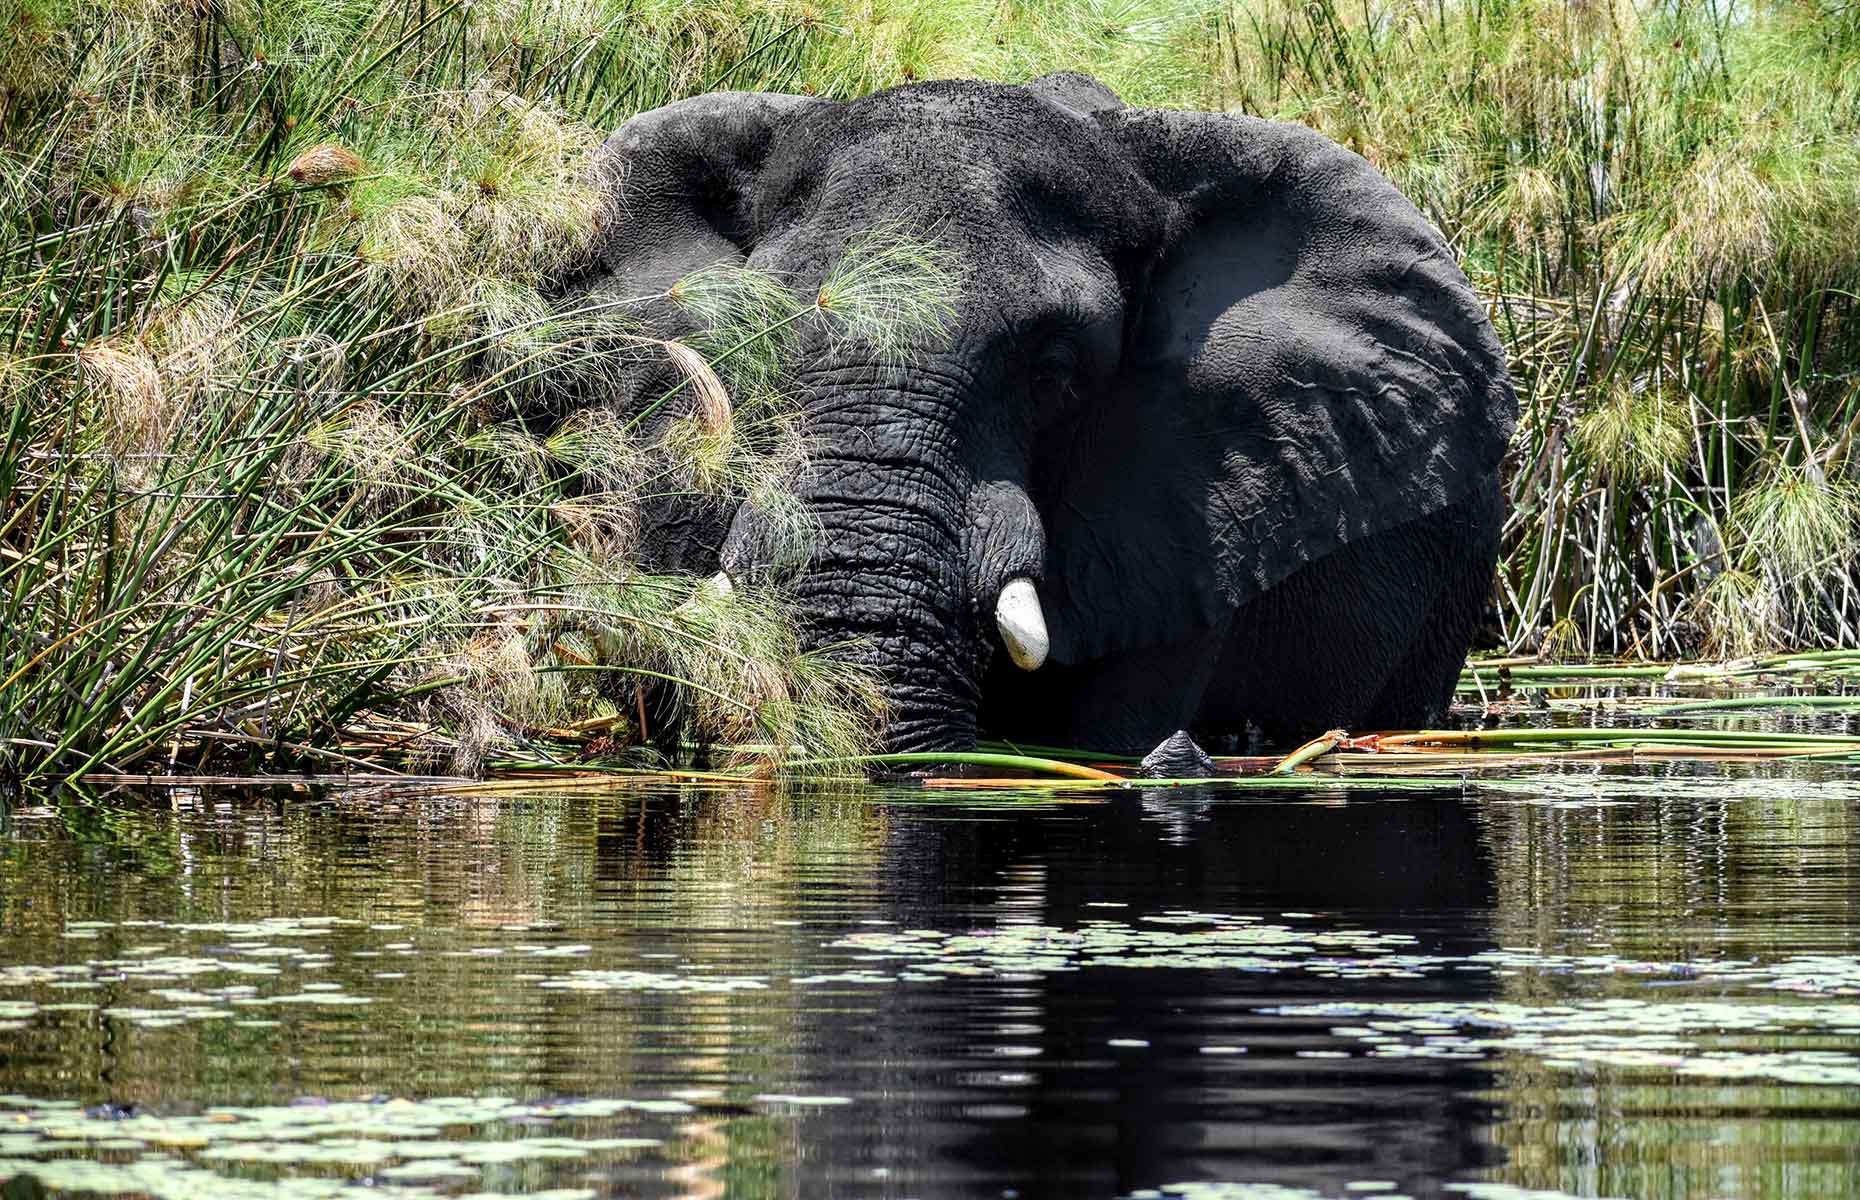 Elephant, Botswana (Image: James Draven)